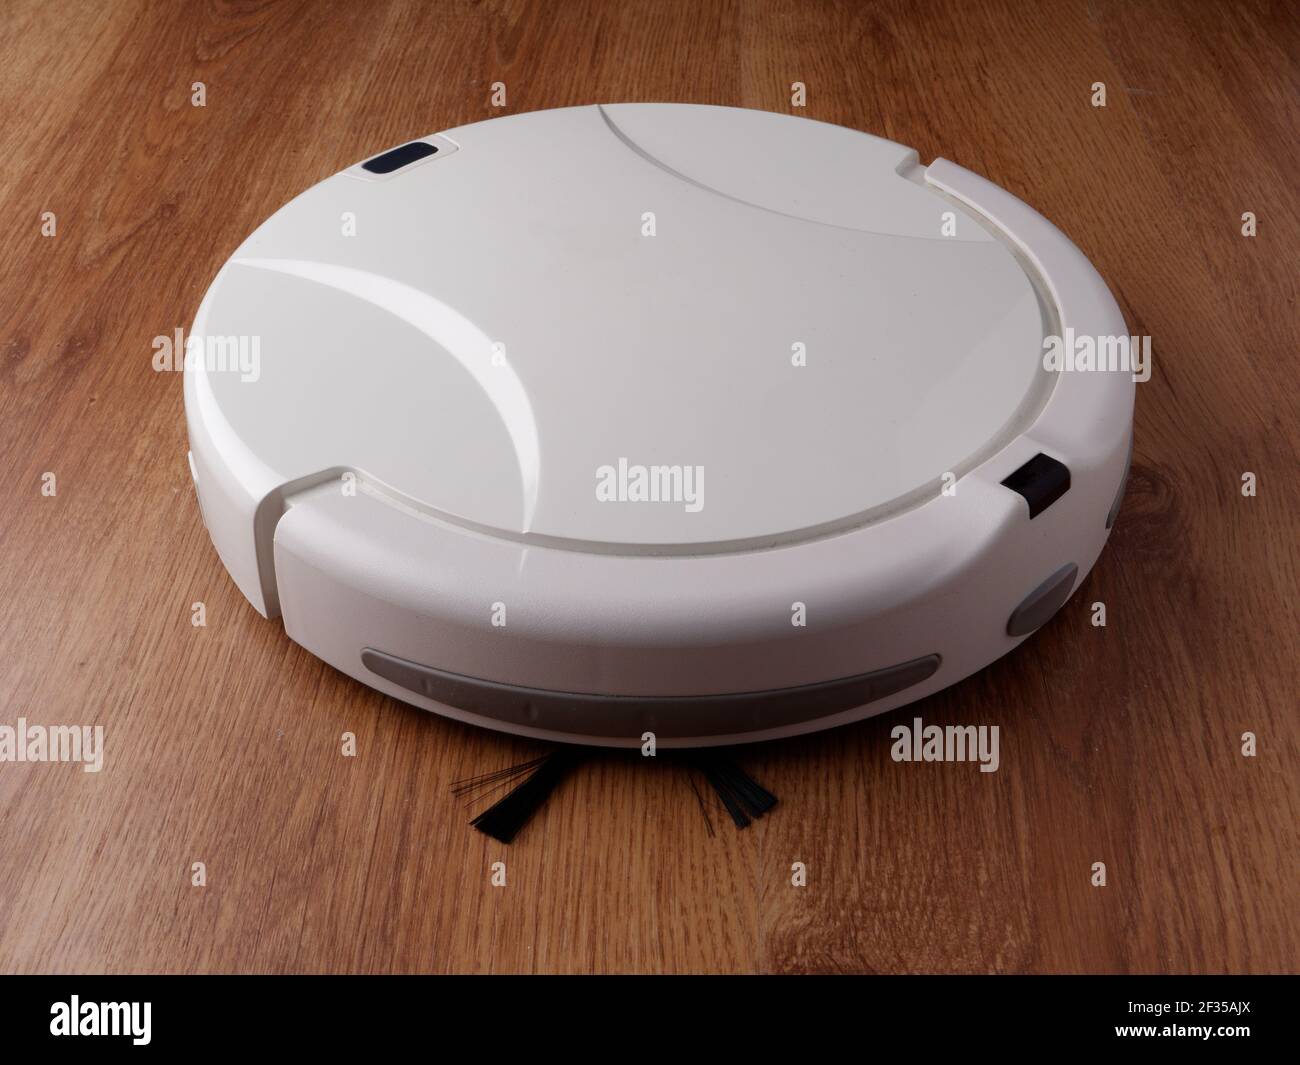 Robot aspirador se apoya en un suelo de parquet de madera, el concepto de  limpieza en la casa, la automatización de la limpieza Fotografía de stock -  Alamy